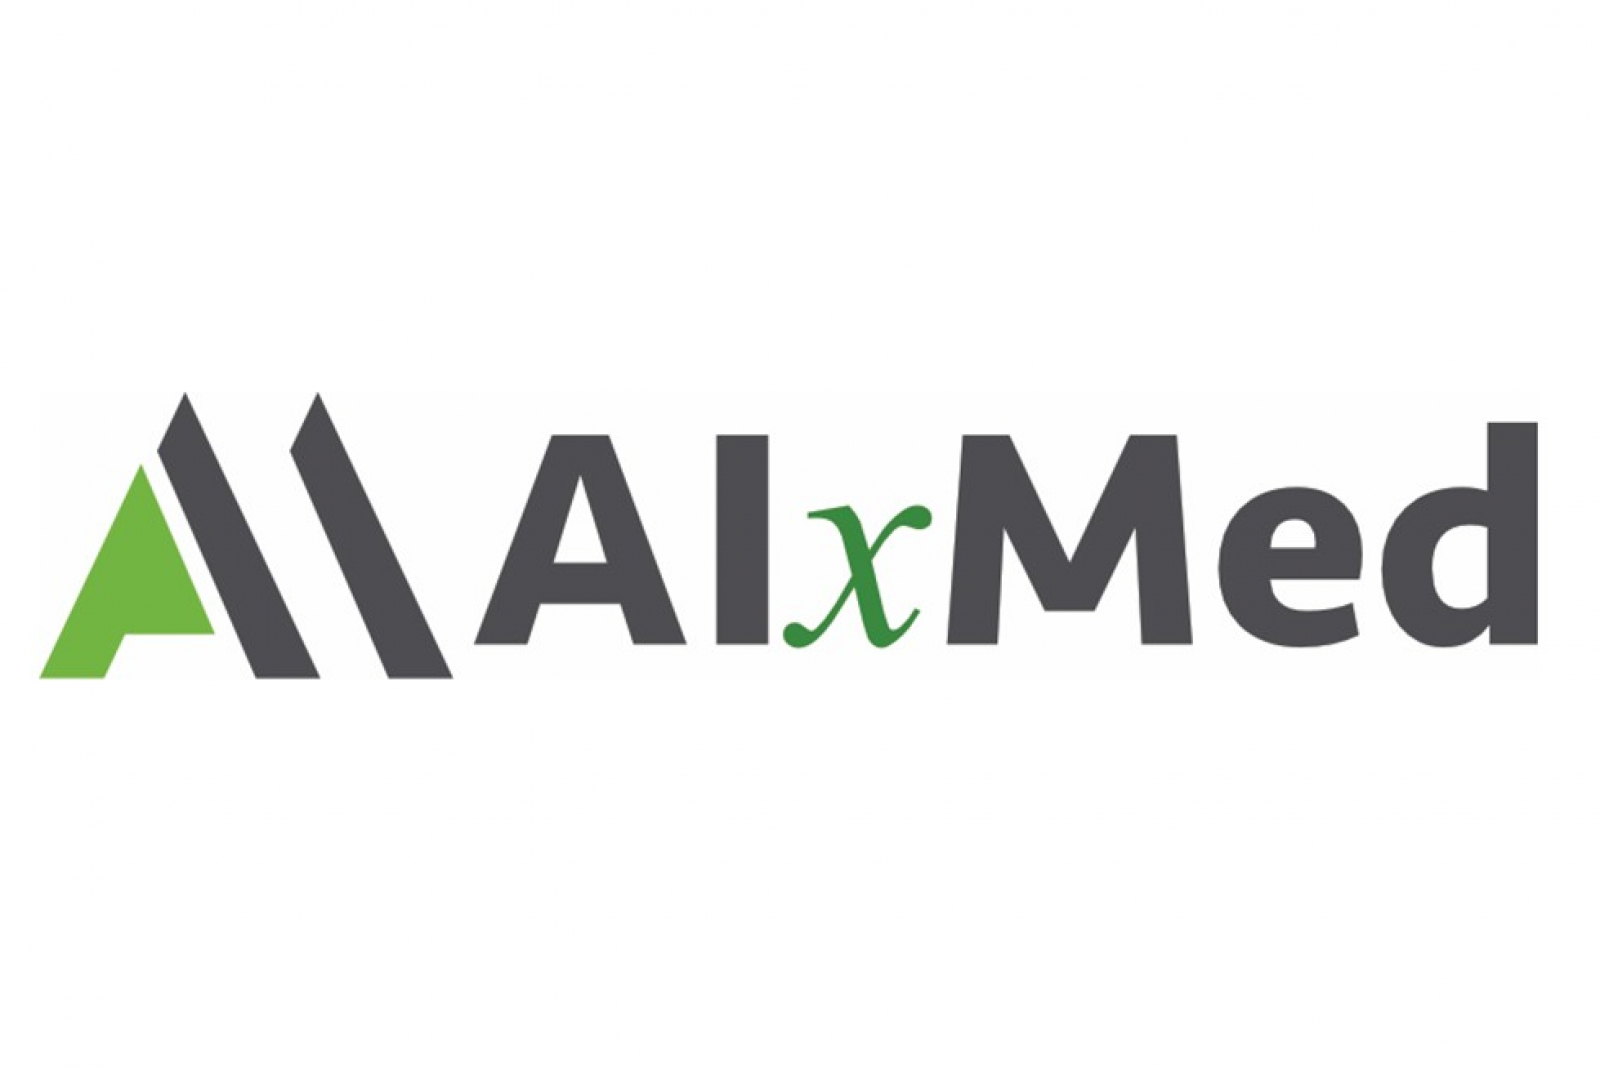 AlxMed sponsor